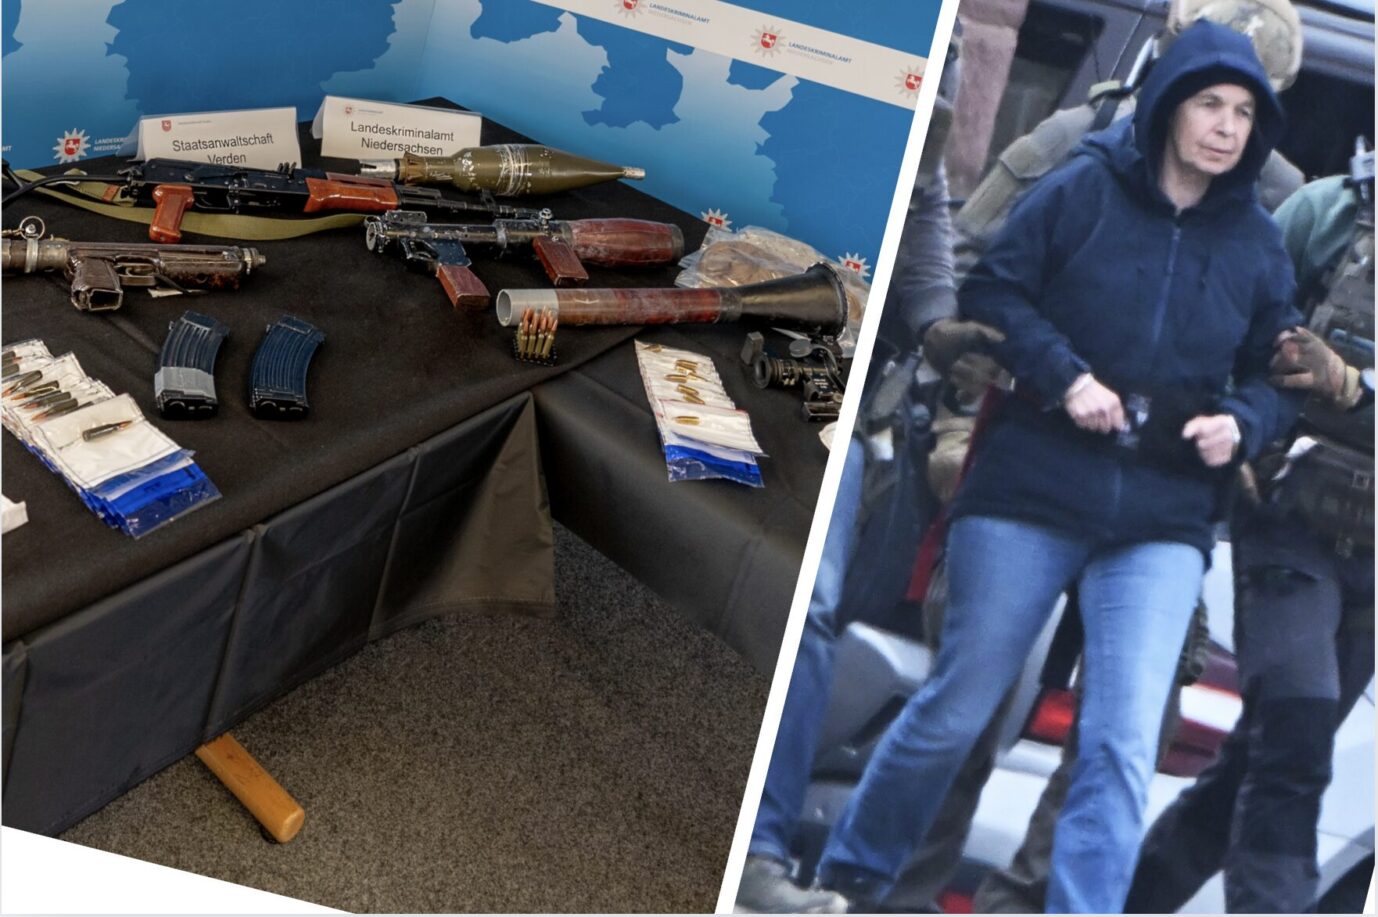 Schußwaffen, darunter eine Kalaschnikow und eine Panzerfaust-Attrappe liegen auf einem Tisch, Ex-RAF-Mitglied DanielaKlette in Handschellen